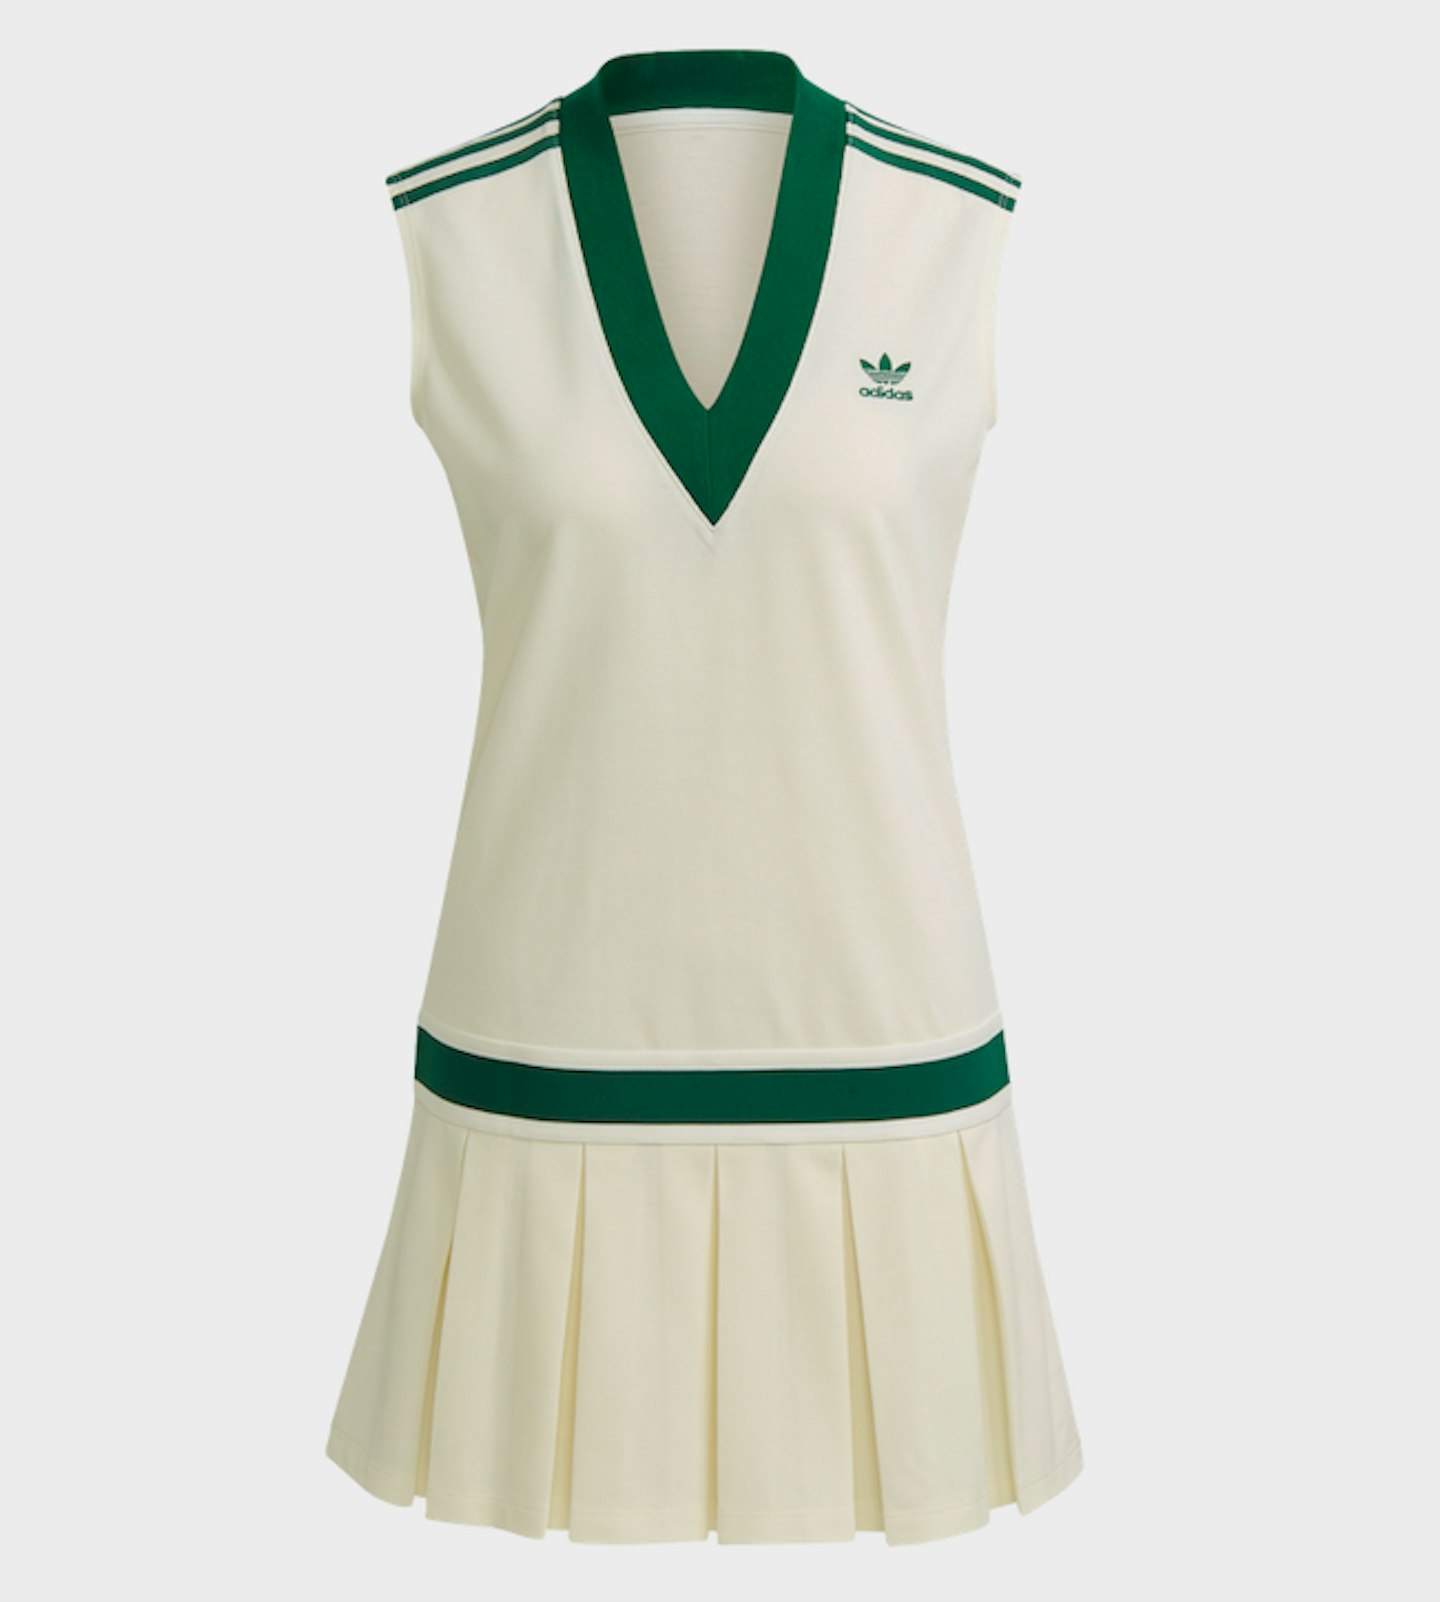 Best sportswear for tennis - Grazia